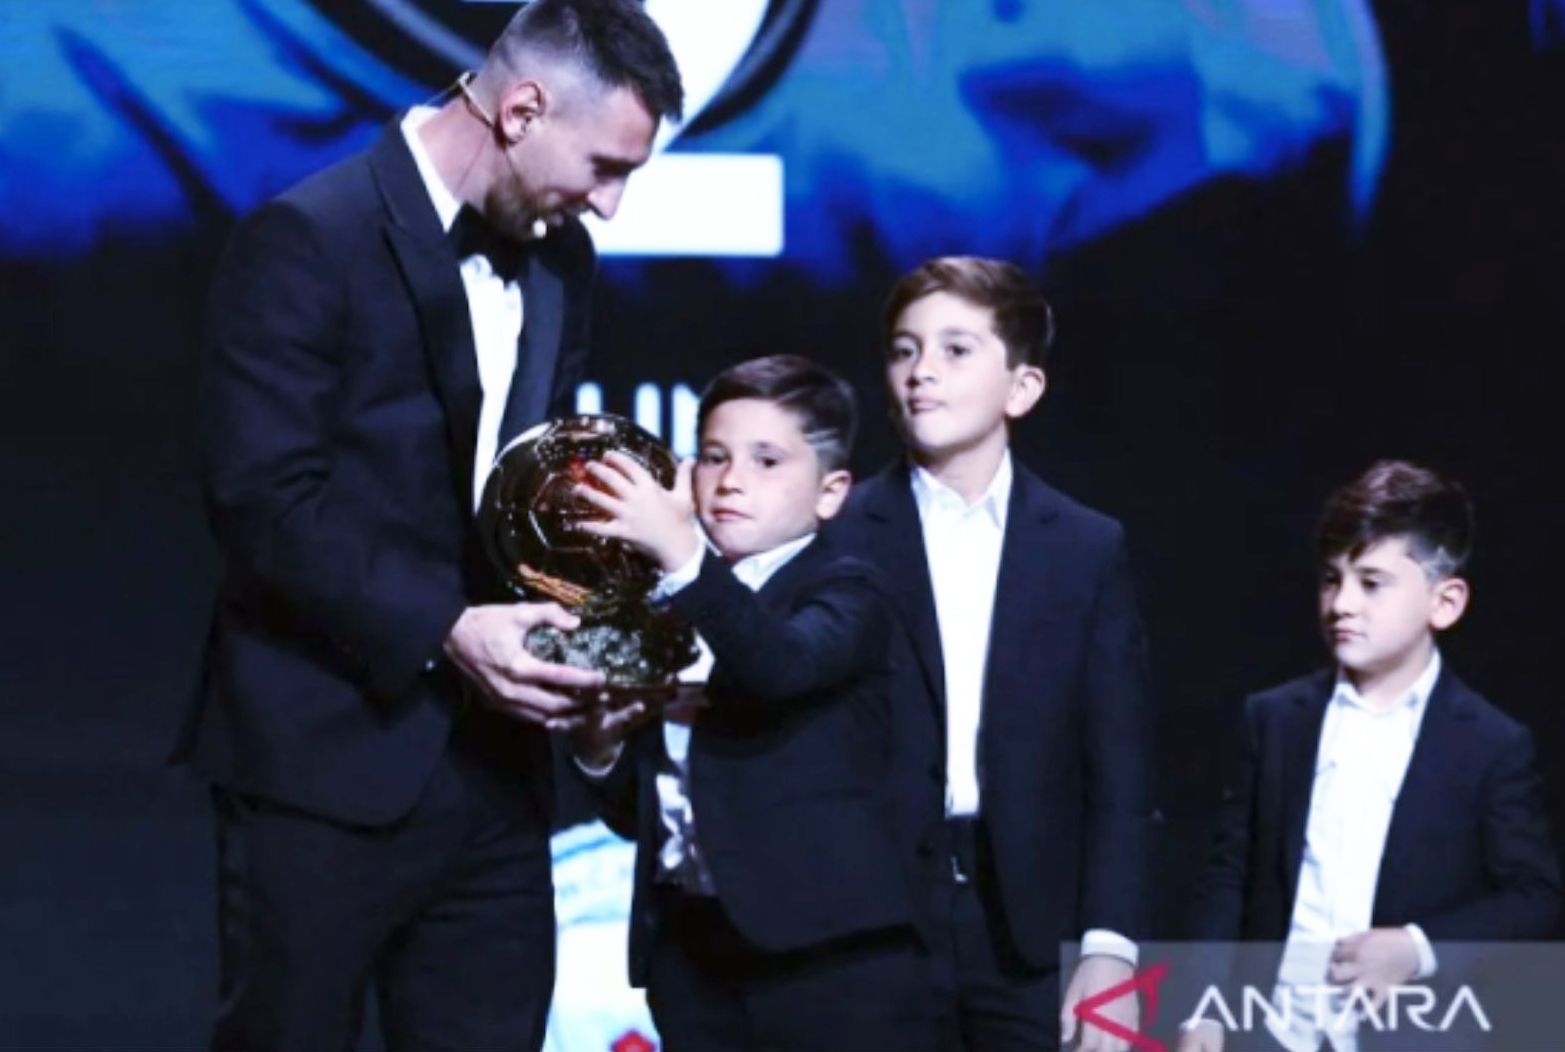 Pemain Inter Miami Lionel Messi (kiri) bersama putranya Thiago (kedua kiri), Mateo (kedua kanan) dan Ciromeraih (kanan) setelah menerima penghargaan Ballon d'Or 2023 sebagai pemain terbaik dunia untuk kedelapan kalinya di Teater Chatelet, Paris, Prancis, Senin (30/10/2023).